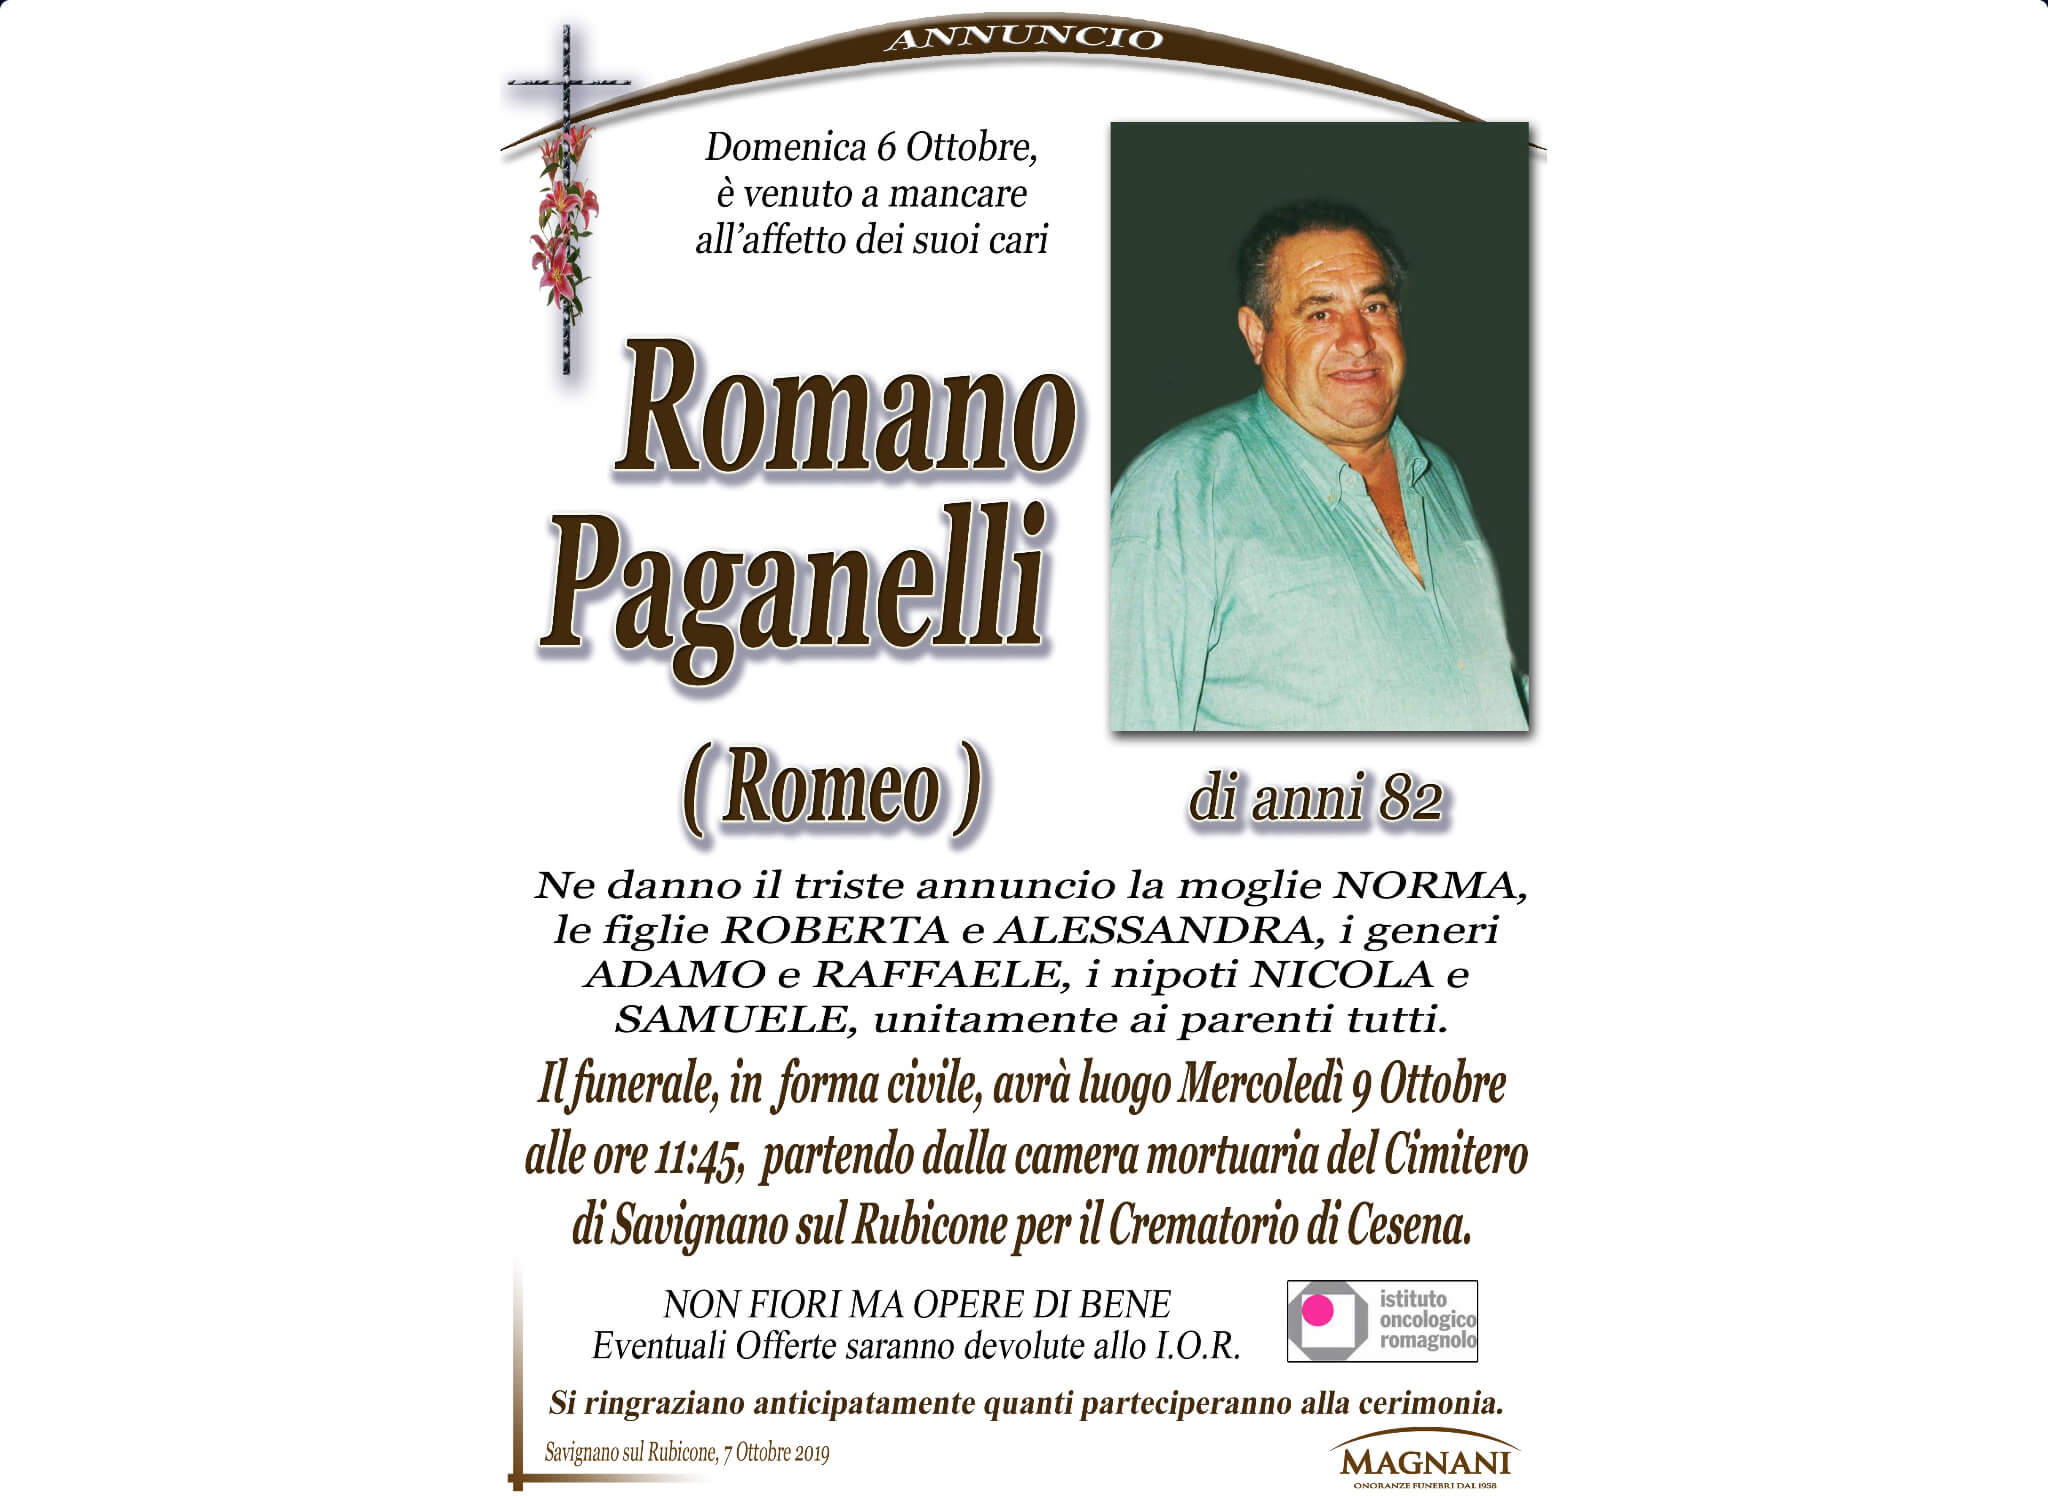 Romano Paganelli